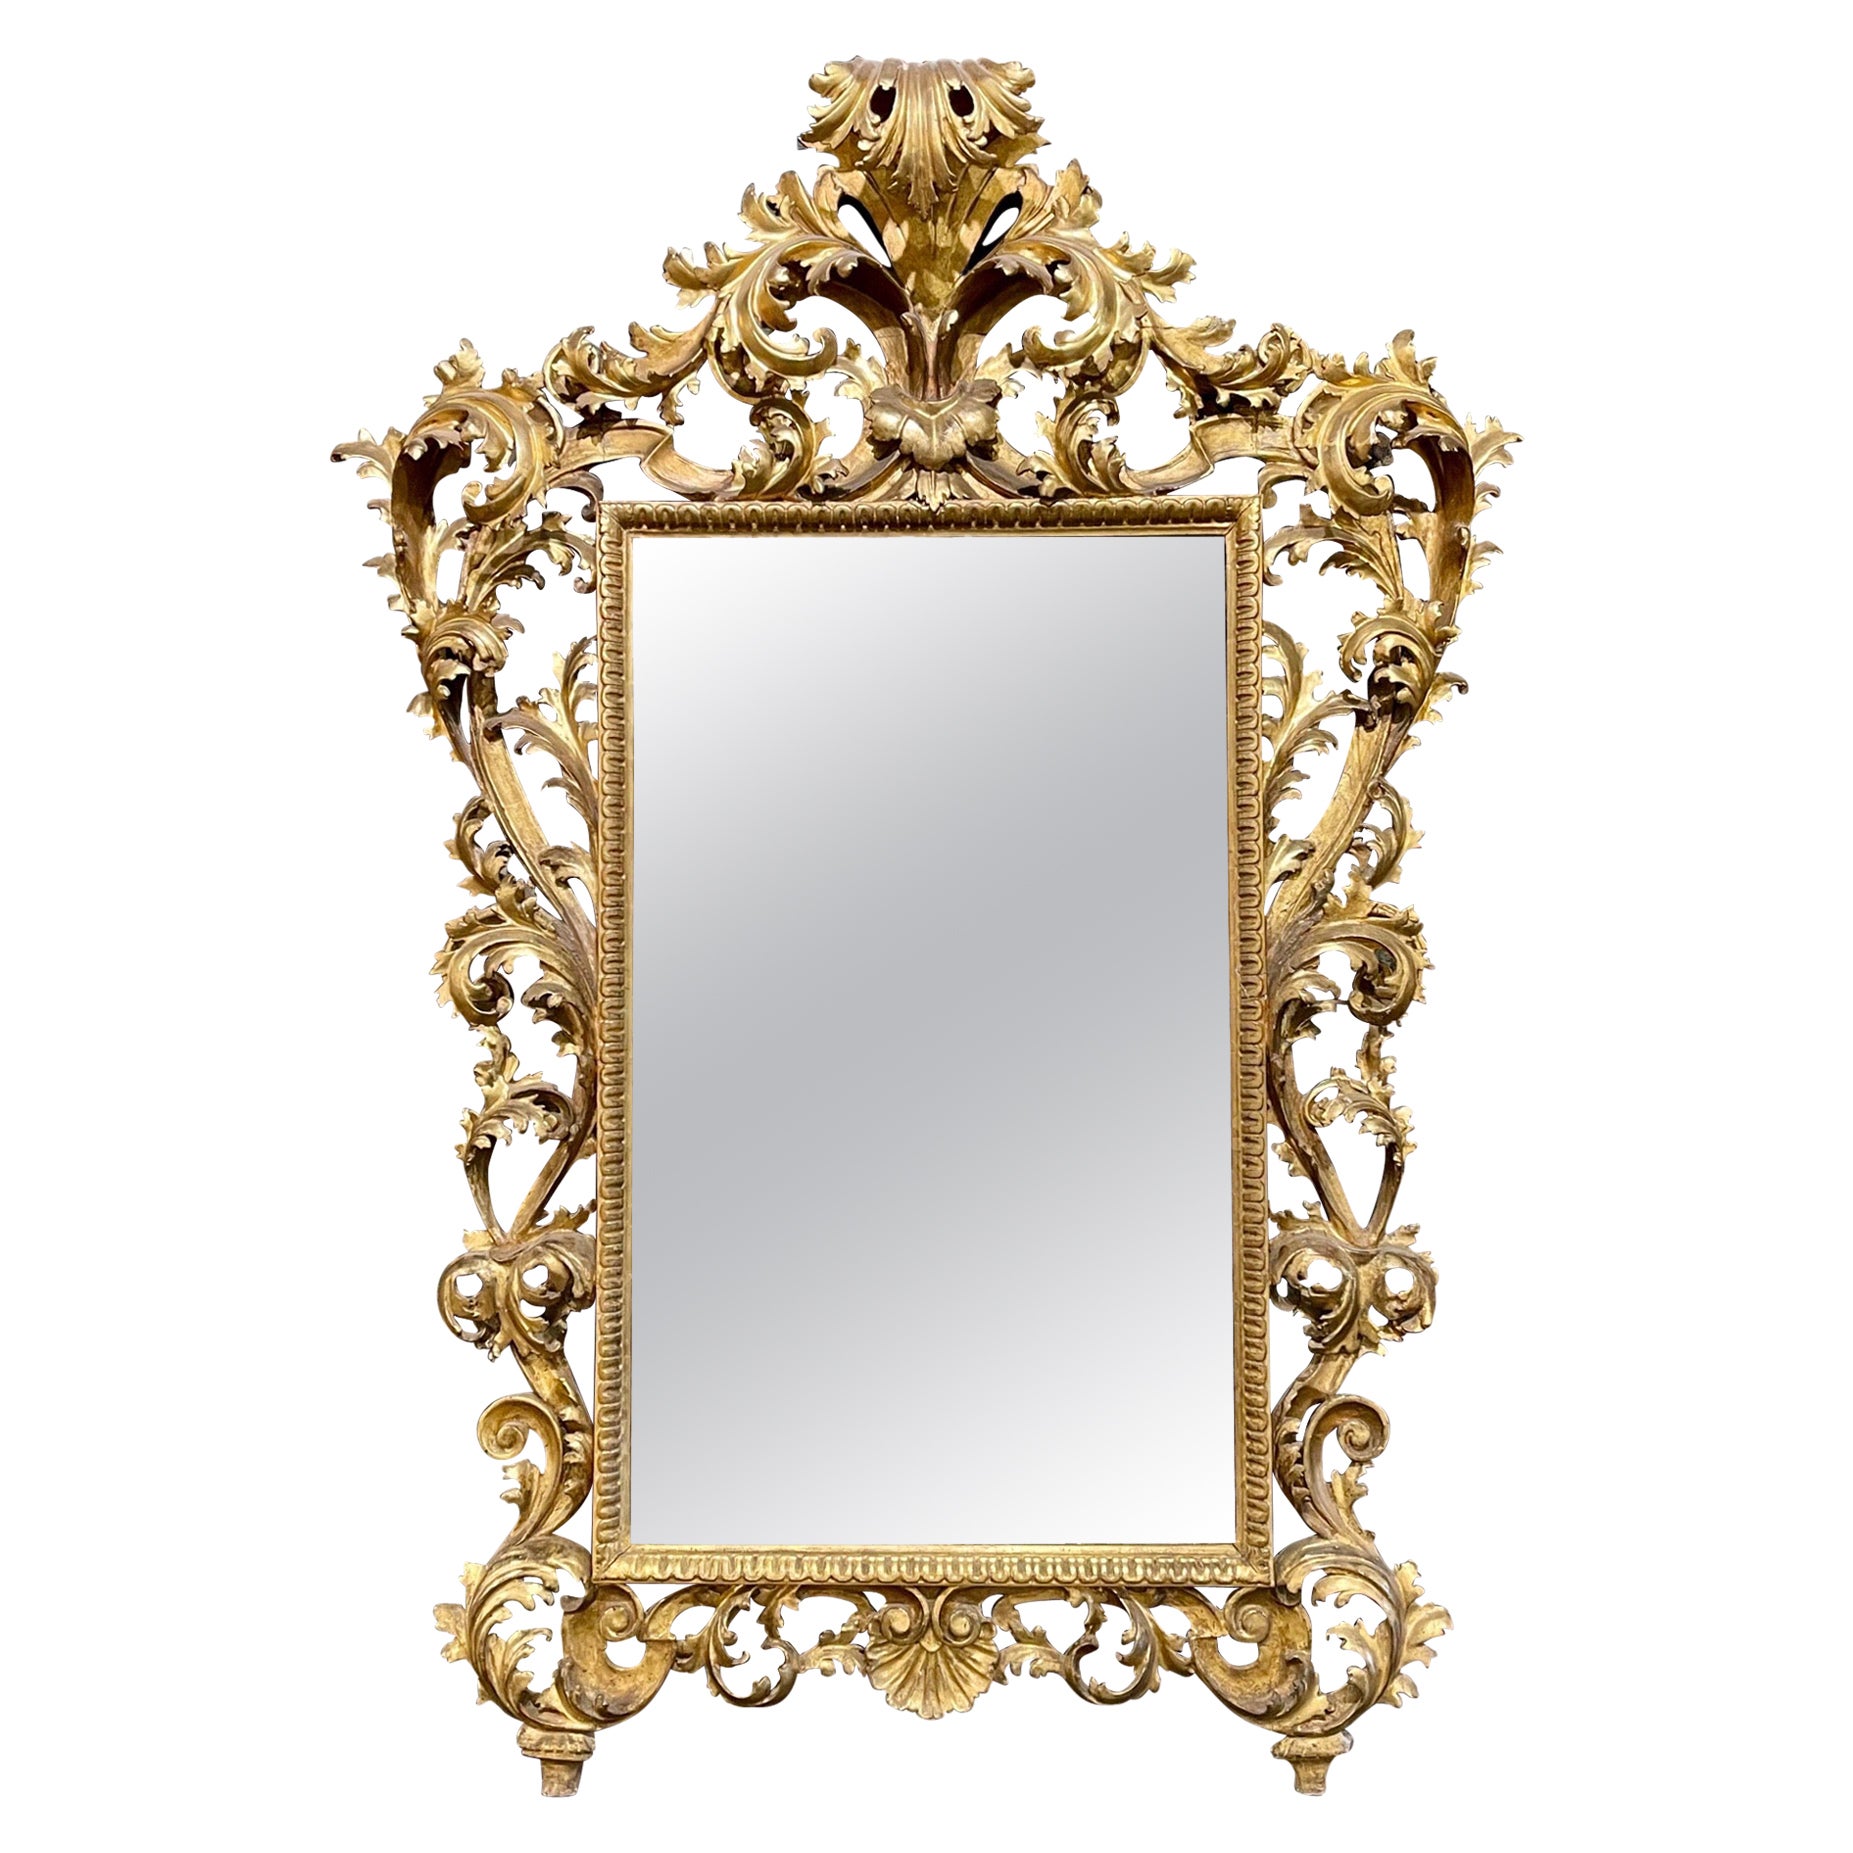 Grand miroir en bois doré italien Florentine du 18e siècle